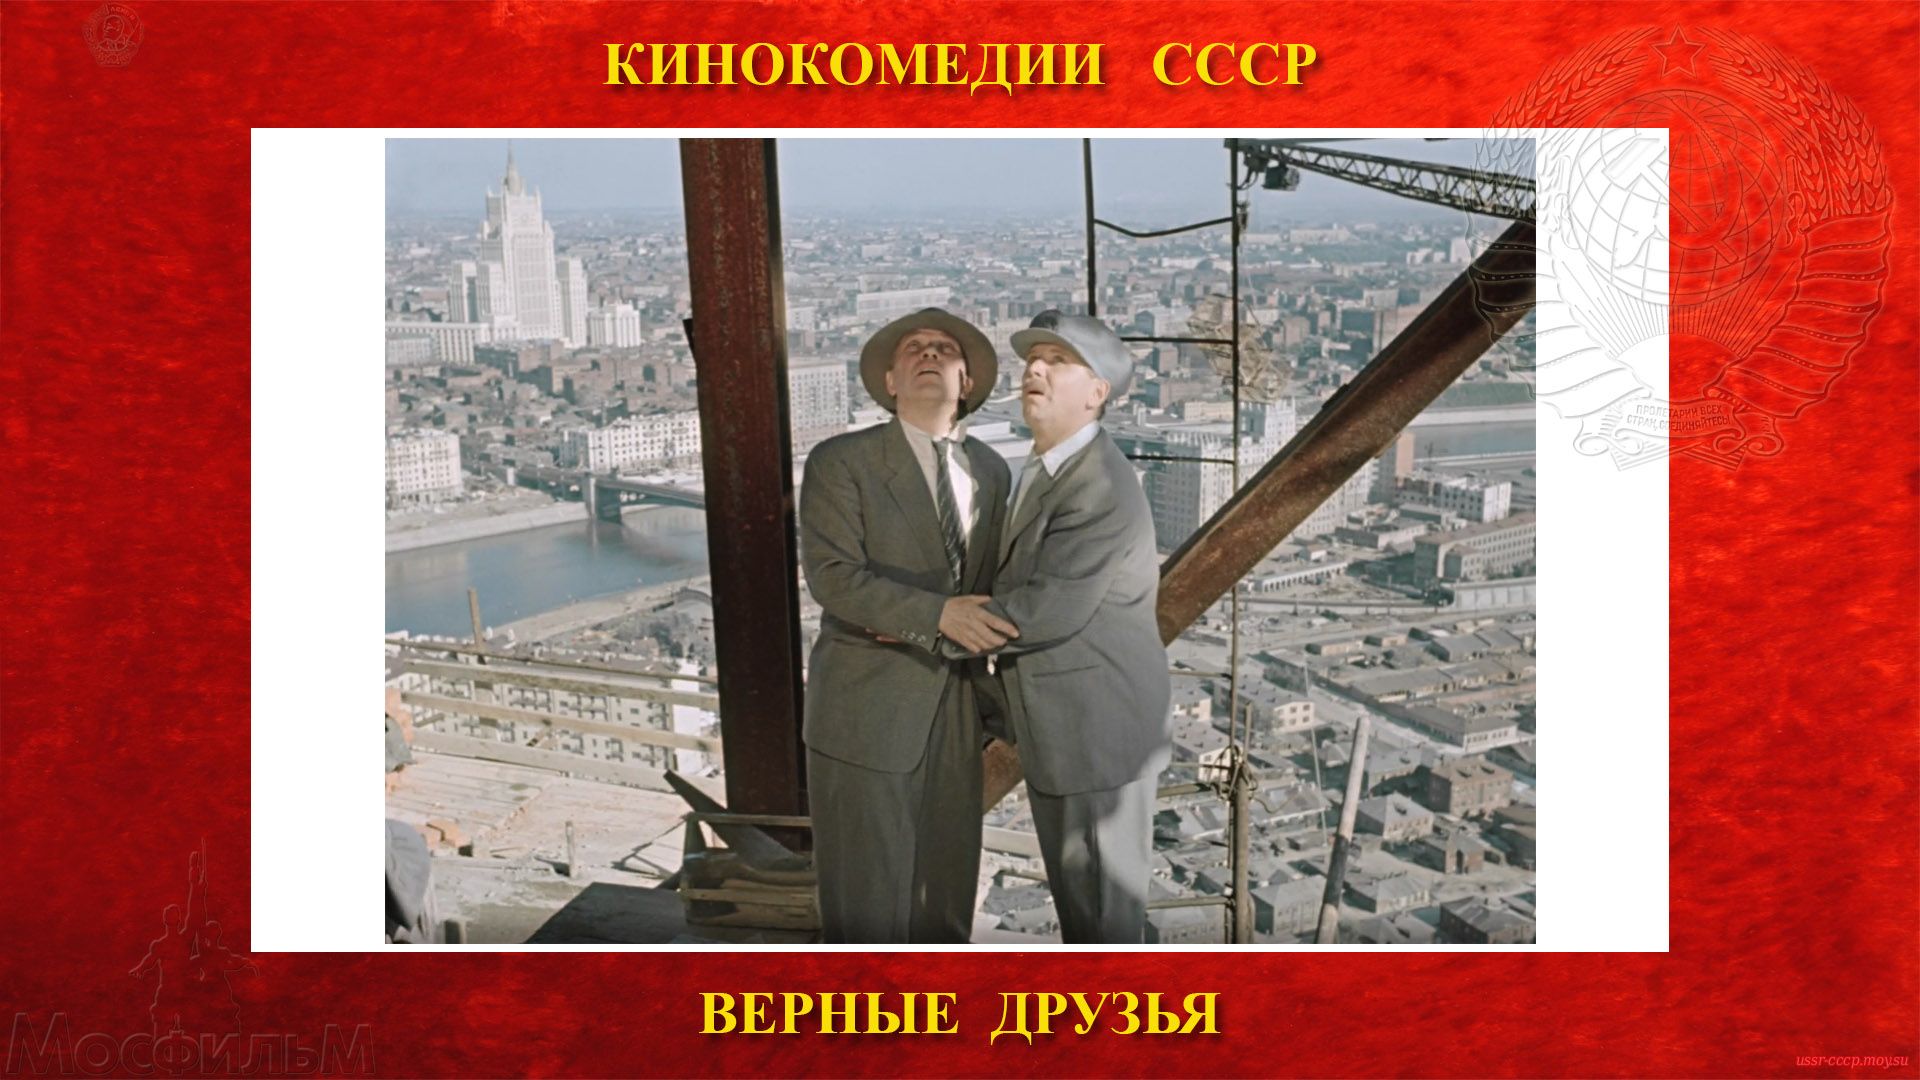 ВЕРНЫЕ ДРУЗЬЯ - Чижов и Лапин в поисках Нестратова на 34 этаже гостиницы Украина